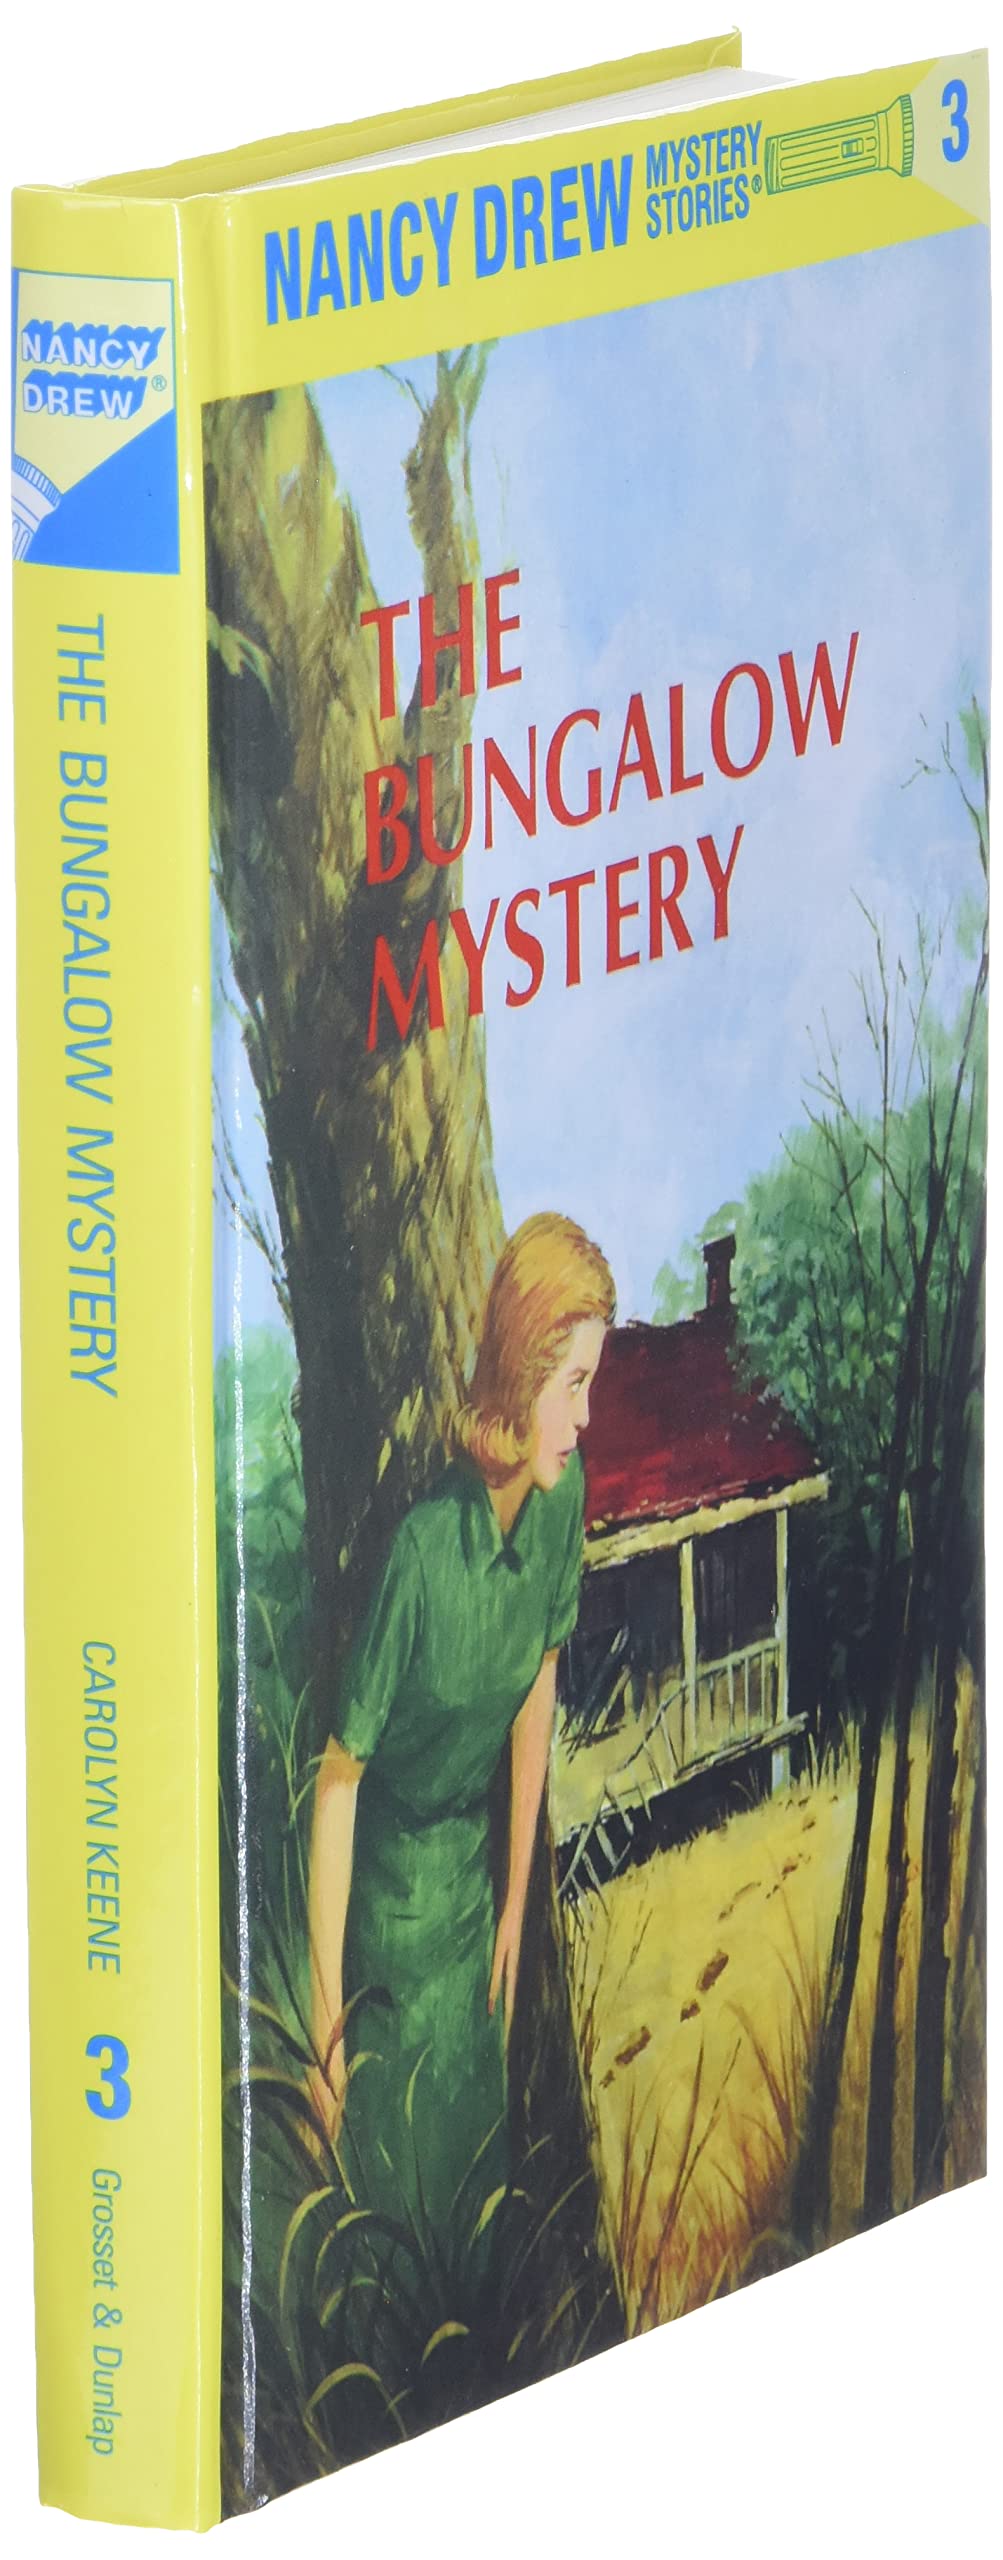 Nancy Drew Mystery Stories (3)- The Bungalow Mystery